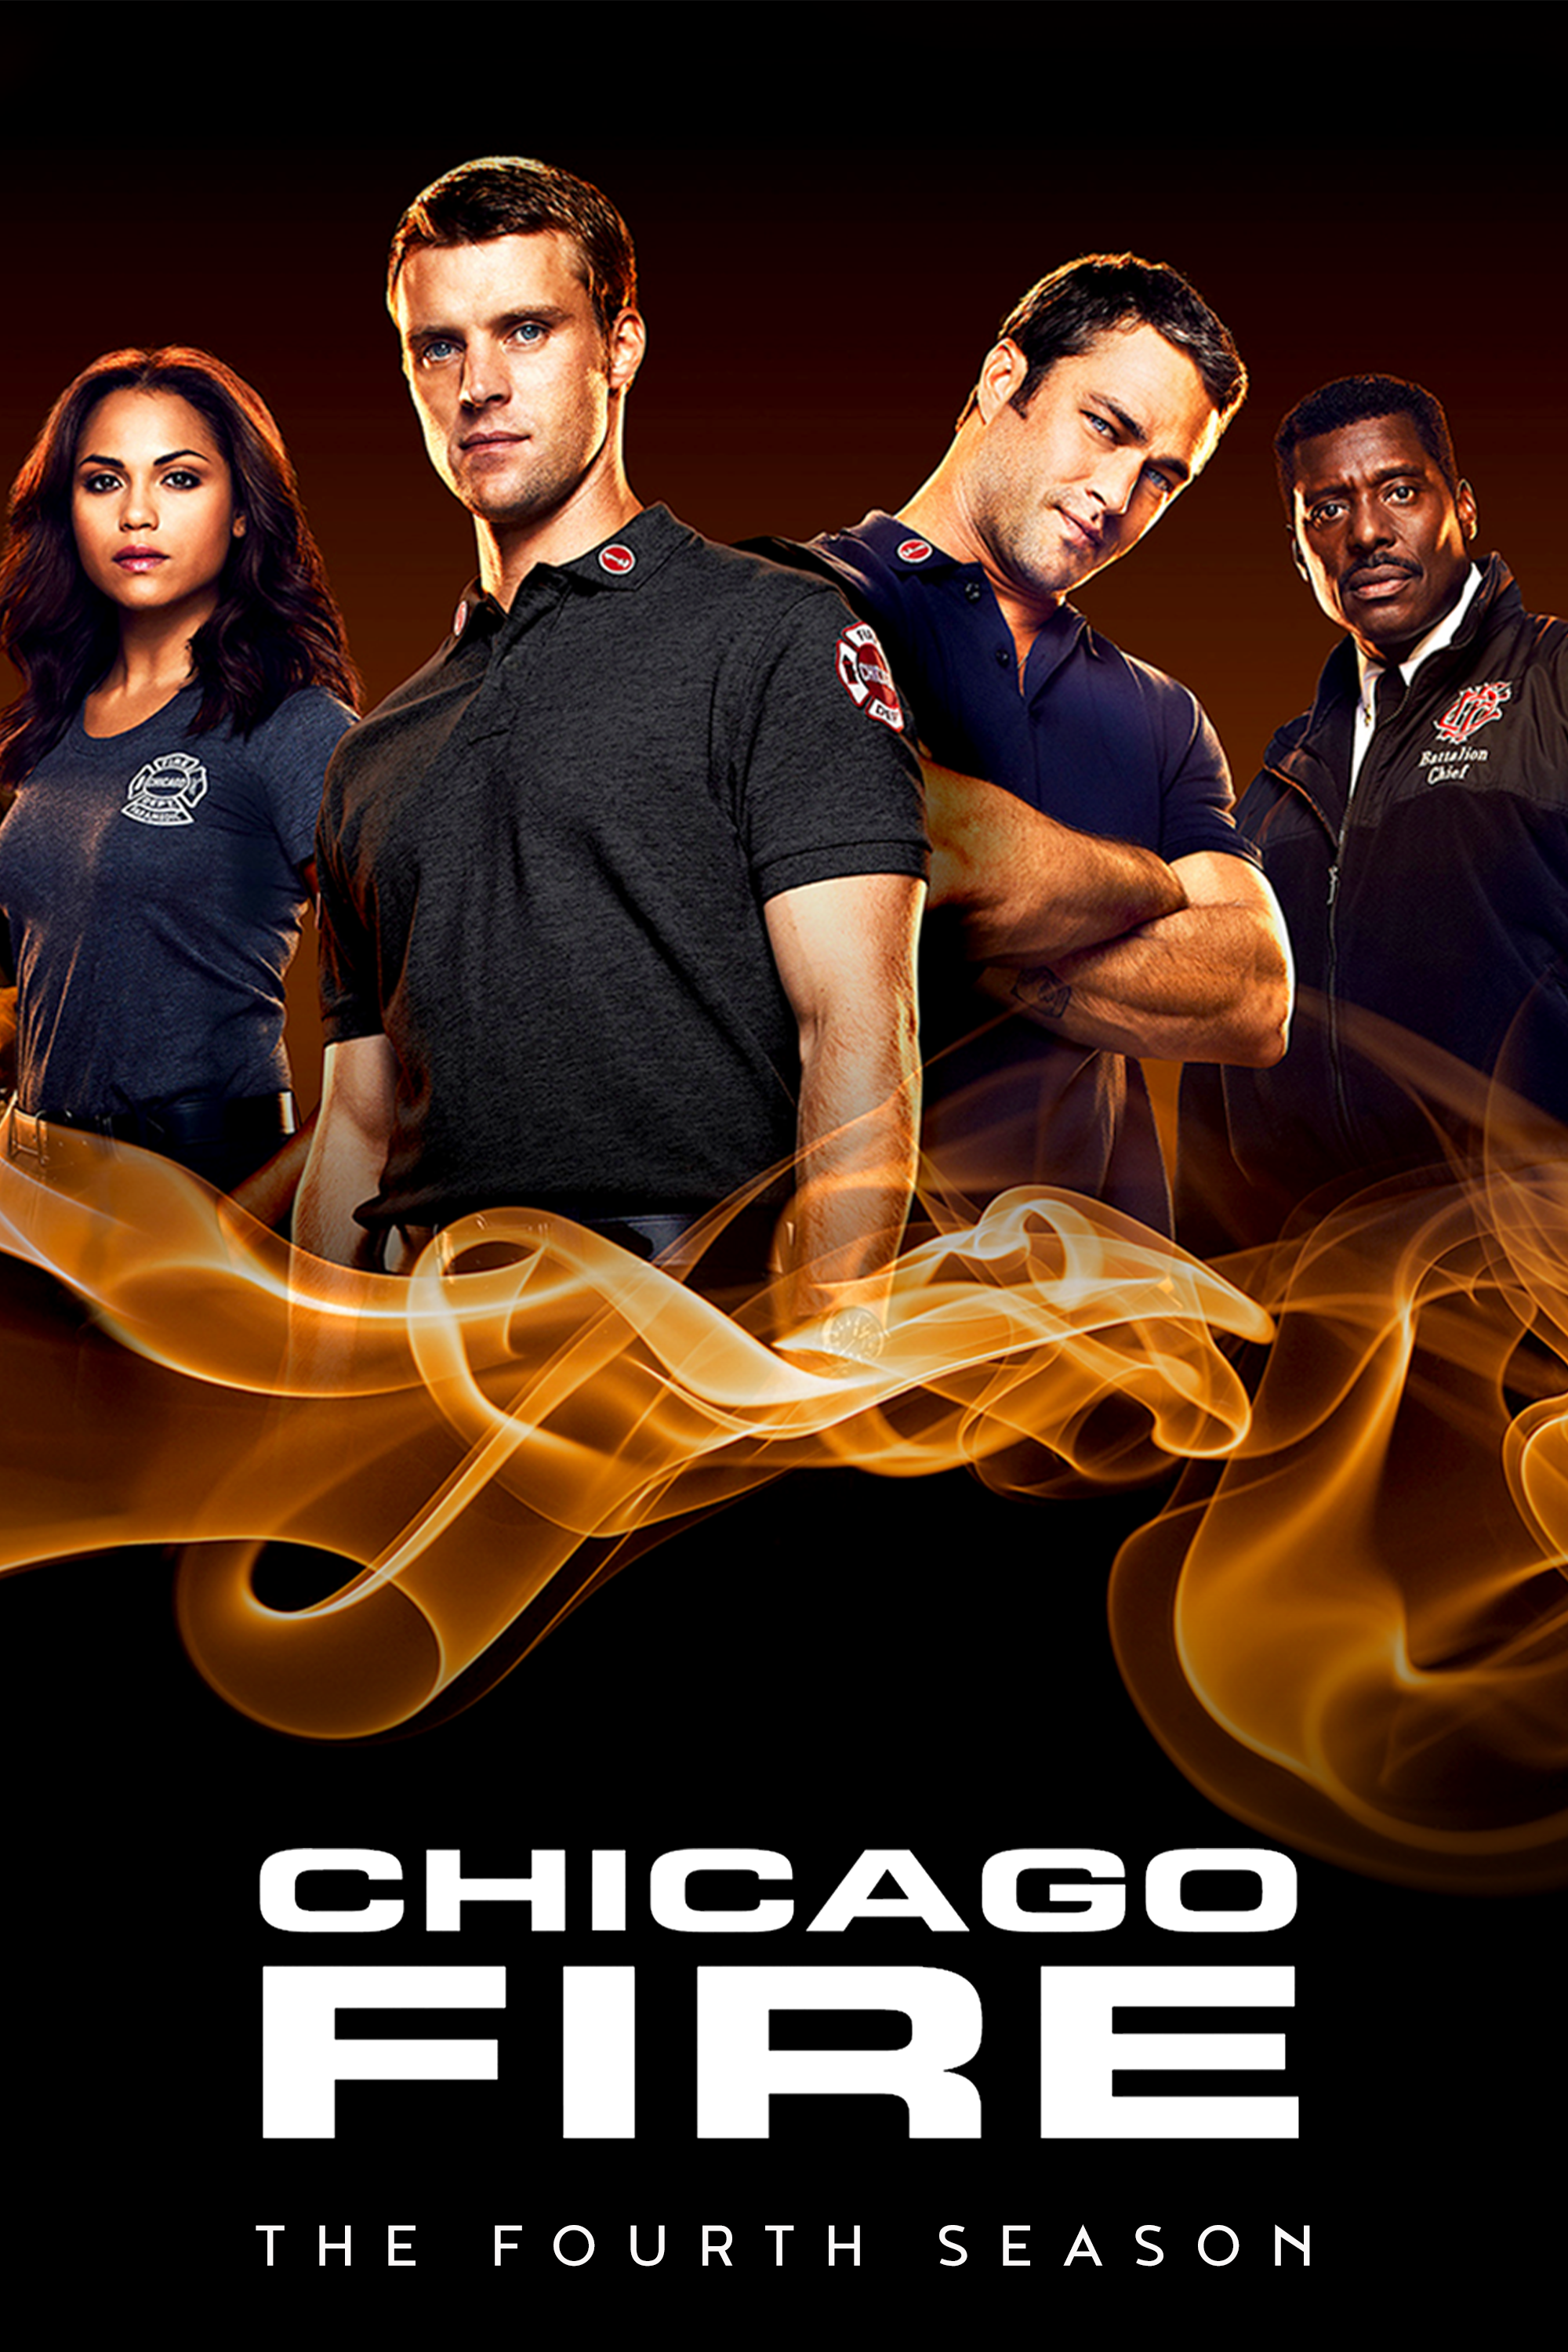 ดูหนังออนไลน์ฟรี Chicago Fire Season 4 EP.13 ชิคาโก้ ไฟร์ หน่วยดับเพลิงท้านรก ซีซั่นที่ 4 ตอนที่ 13